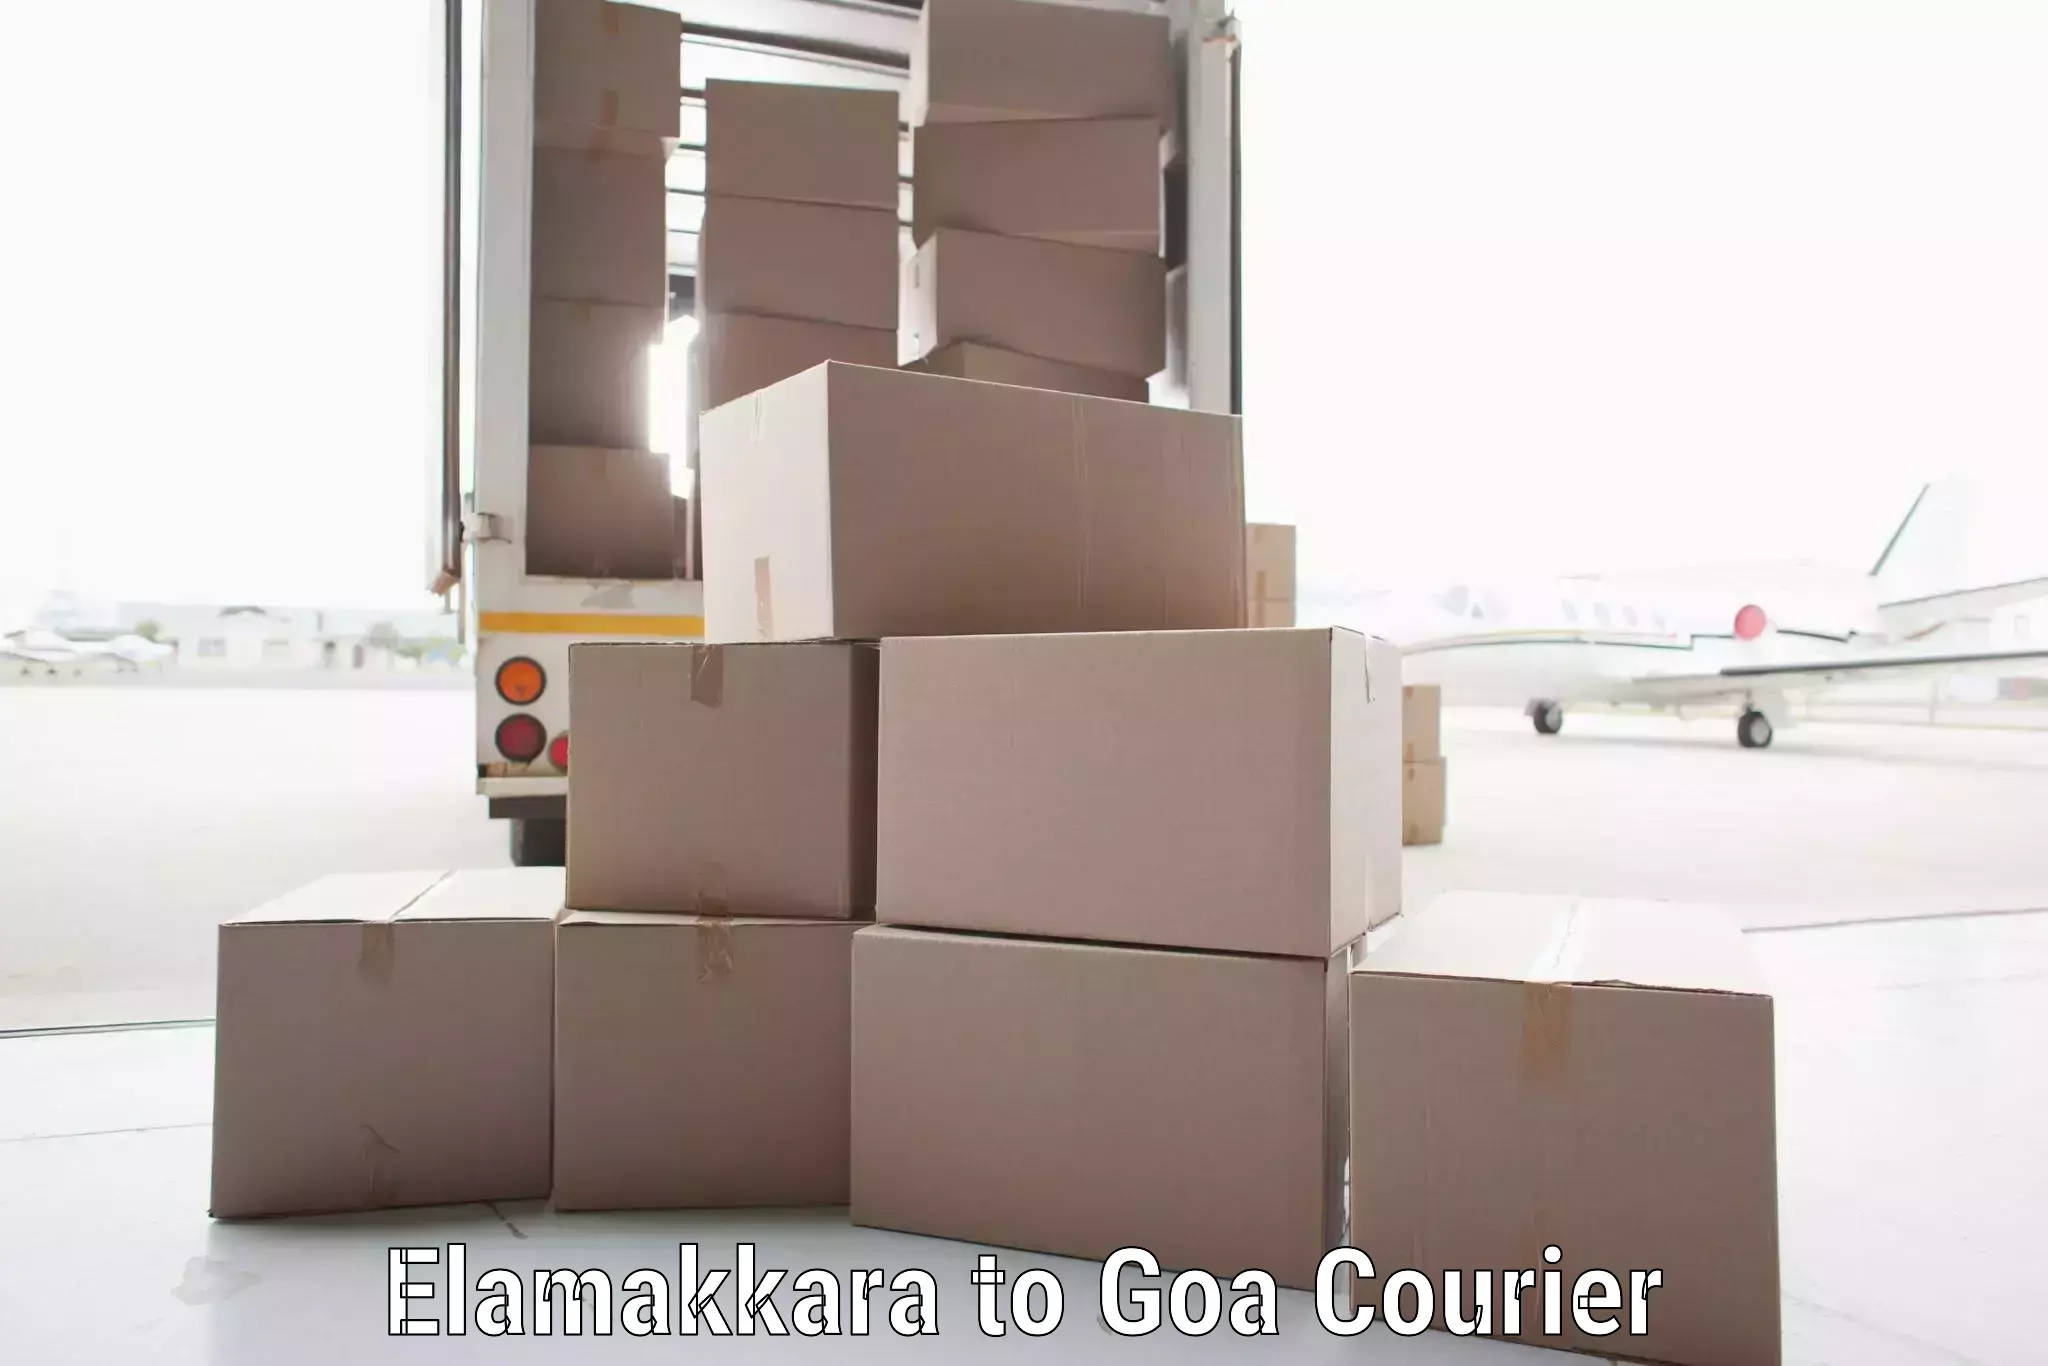 Secure freight services in Elamakkara to IIT Goa